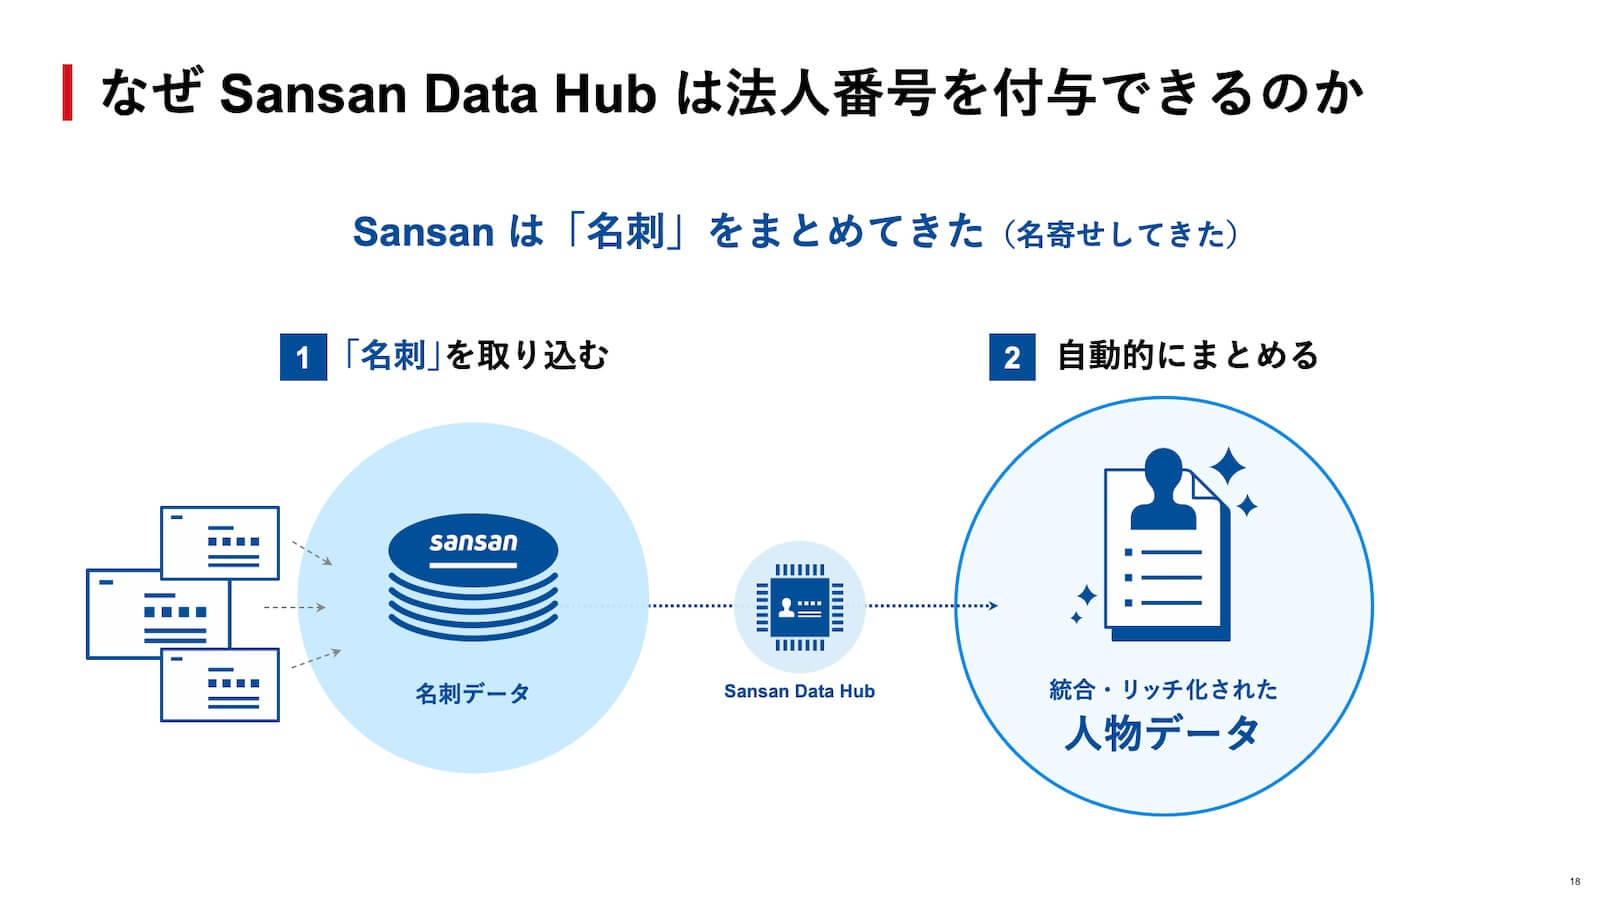 なぜSansan Data Hubは法人番号を付与できるのか